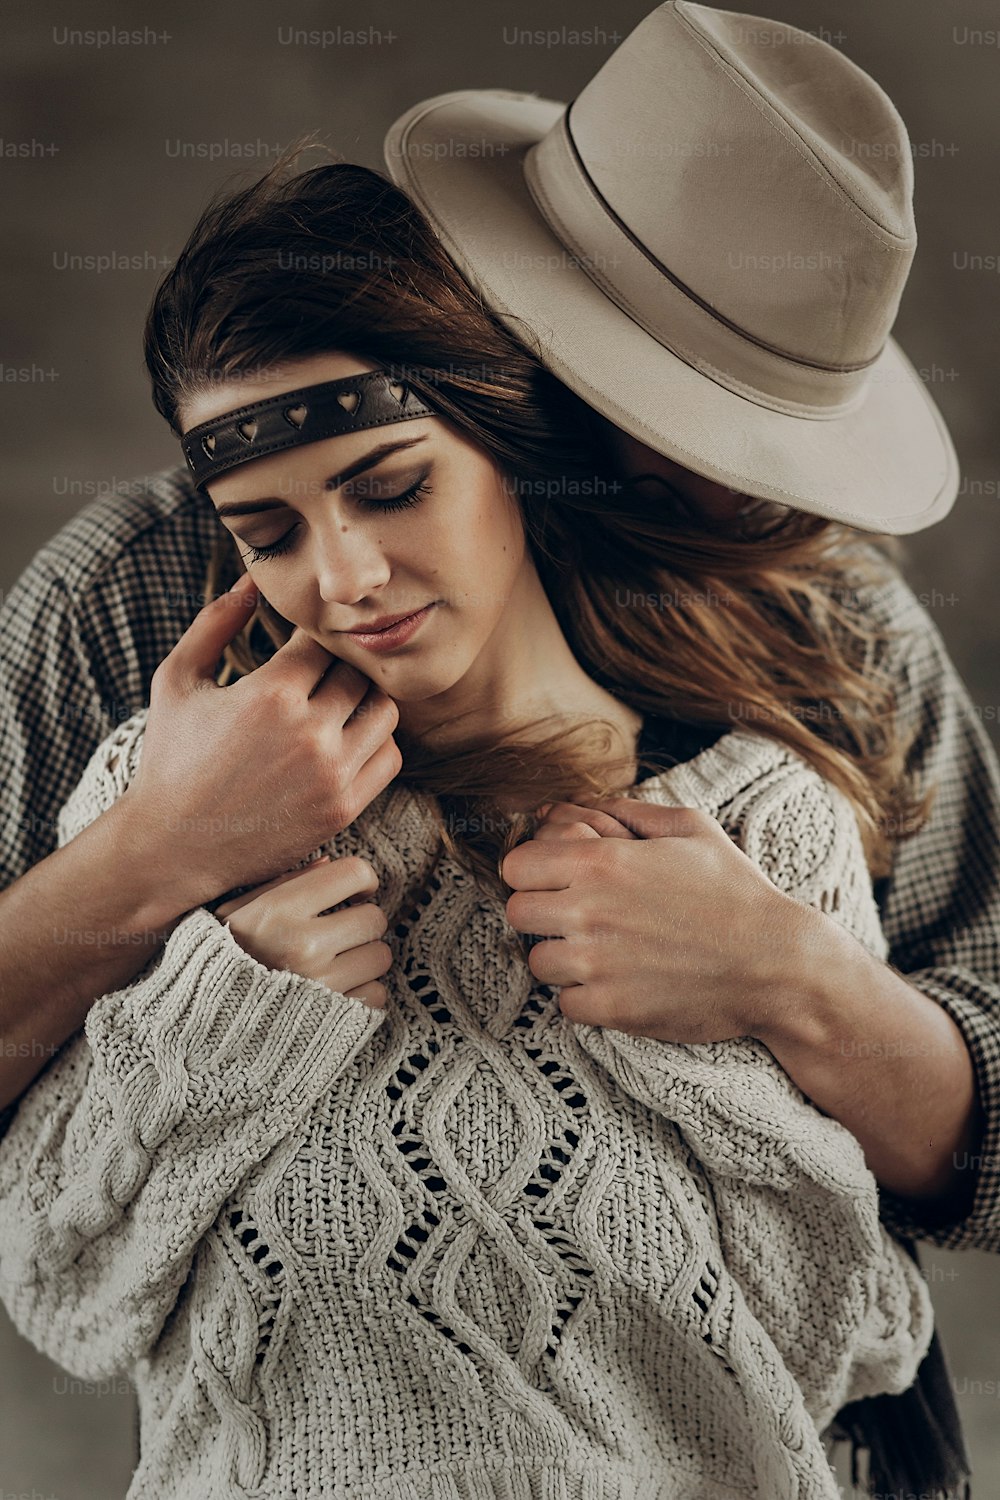 Homem cowboy bonito no chapéu branco tocando a bochecha da bela mulher cigana boho com faixa de cabeça de couro, retrato de close-up do rosto